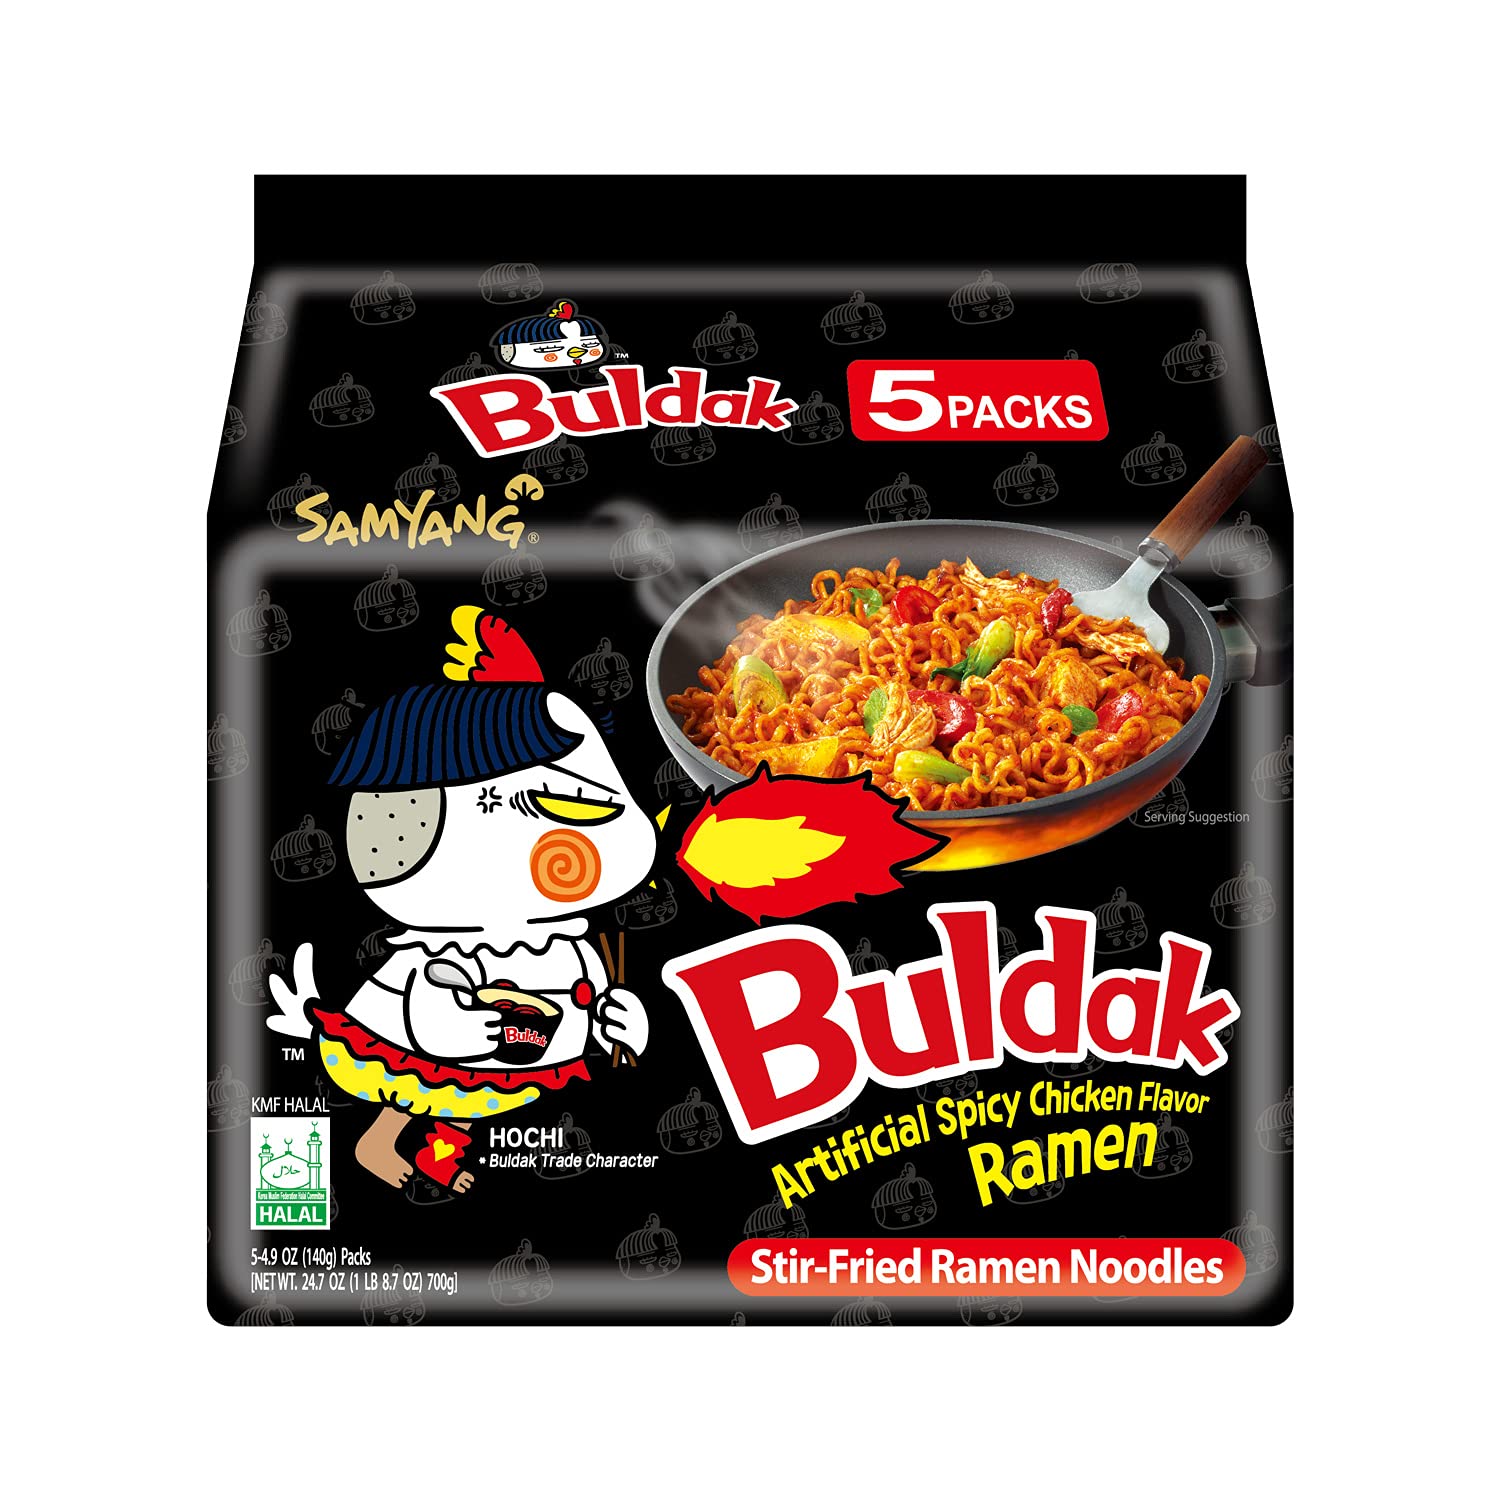 luckystore Pan Asian Products > Noodles Samyang Buldak Fire Hot Chicken Flavor Ramen 140g X 5 pack